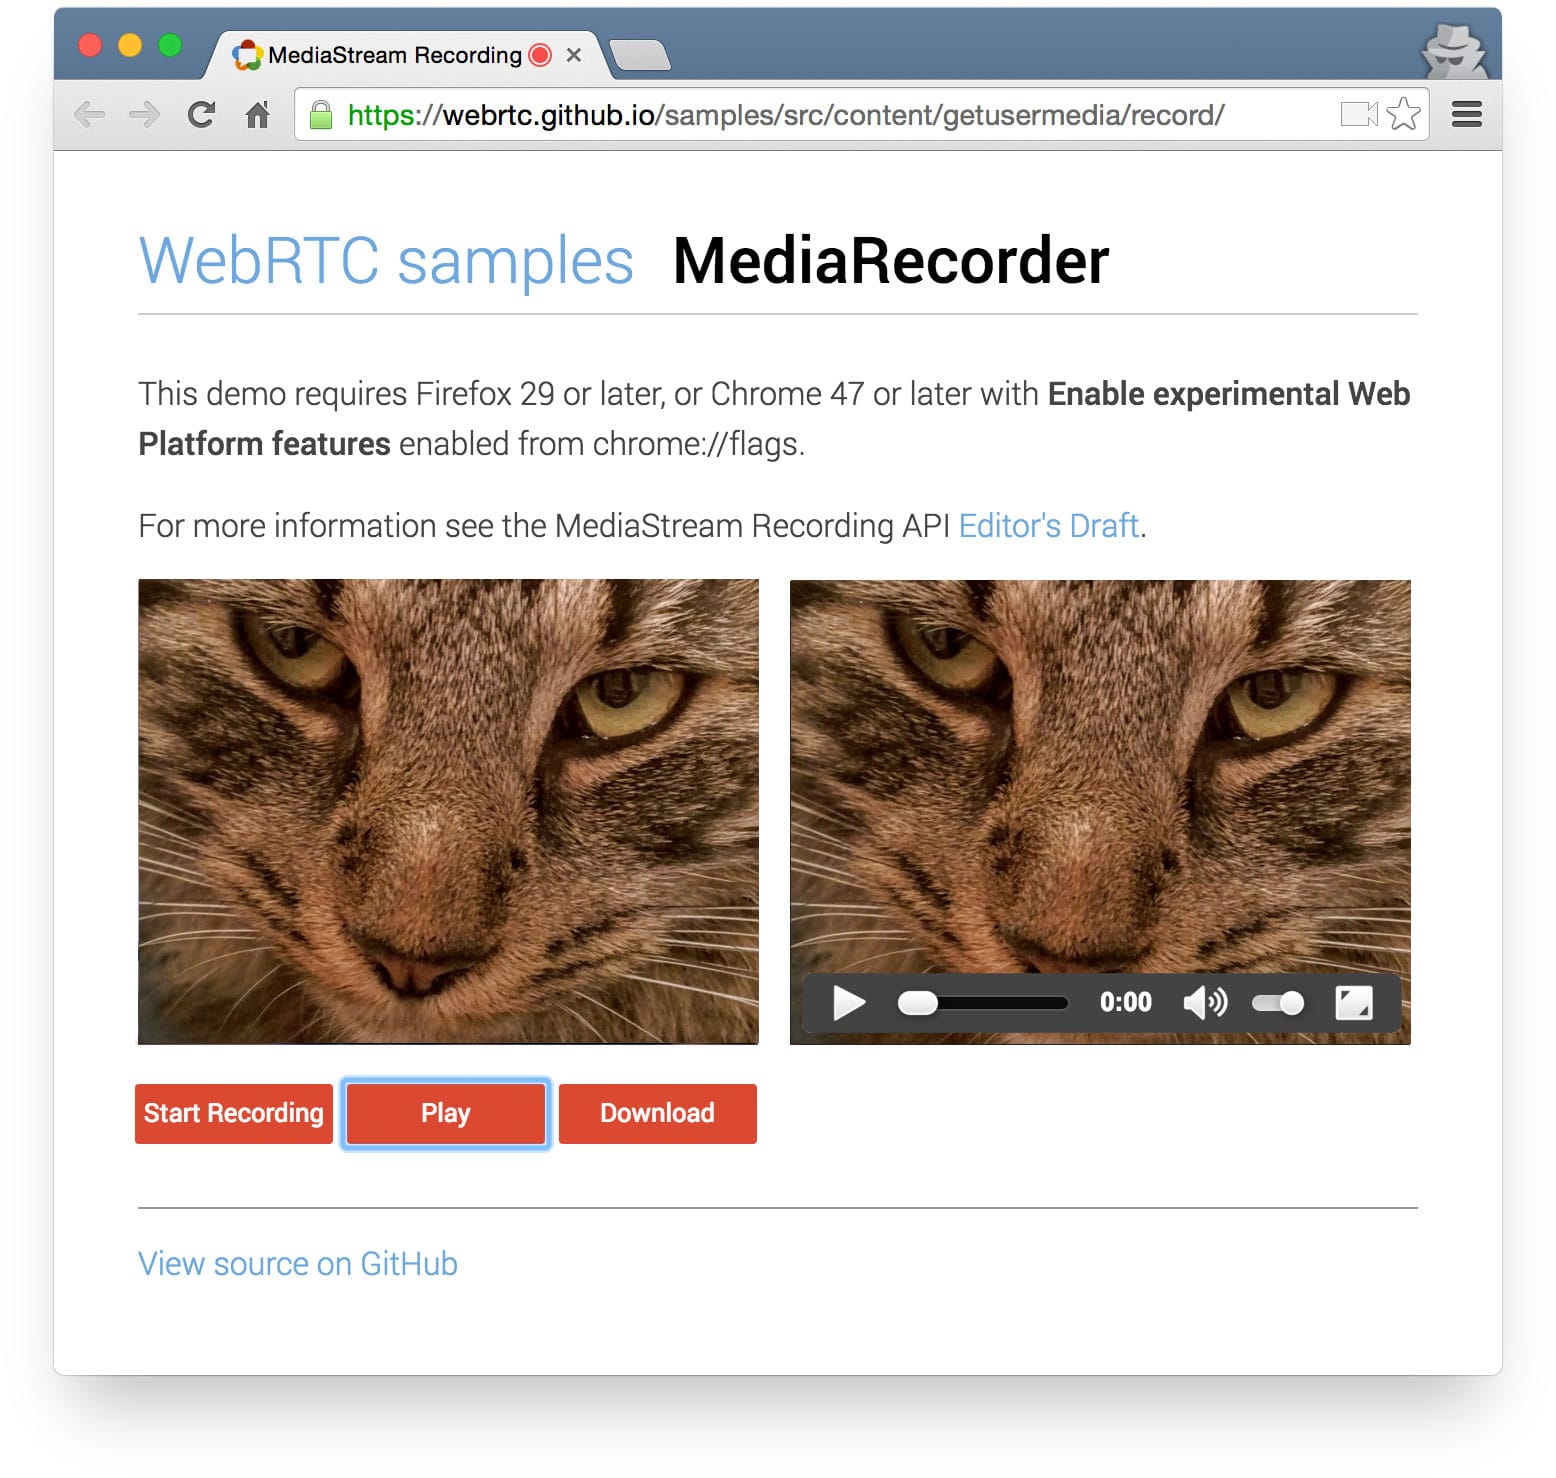 Captura de pantalla de la demostración de MediaRecorder en el repositorio de muestras de GitHub de WebRTC